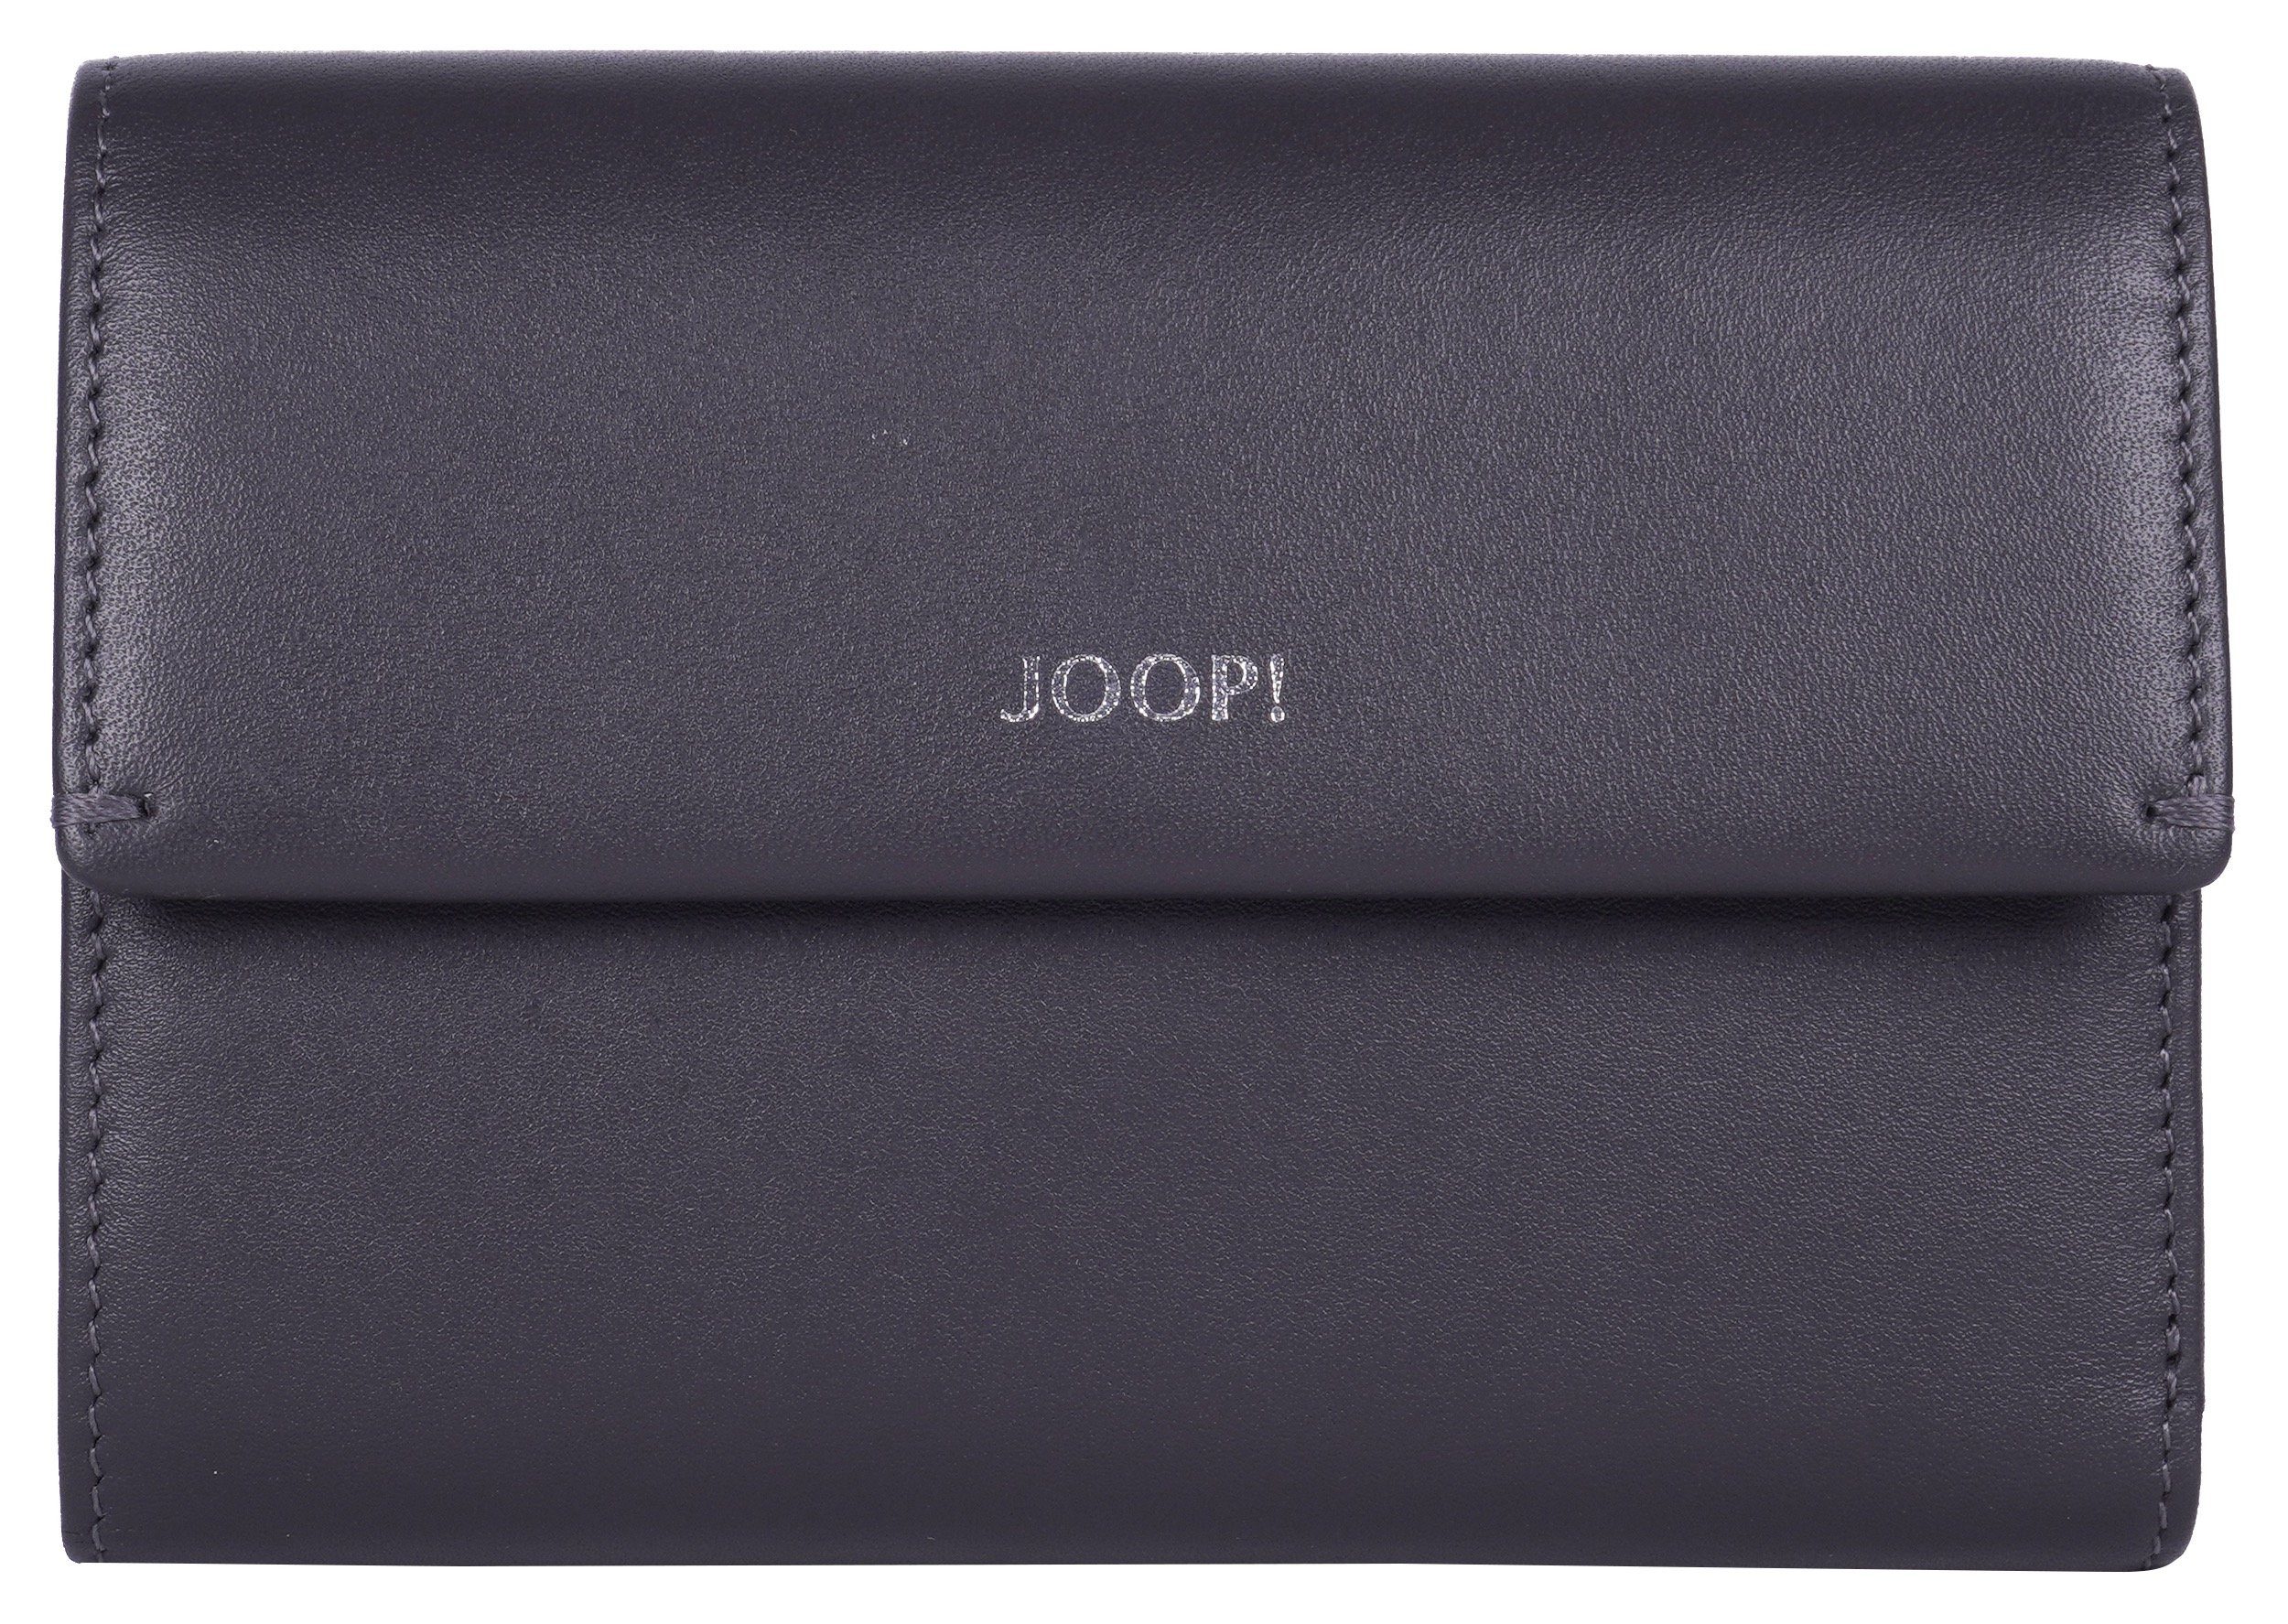 in schlichtem Geldbörse mittelgrau mh10f, Design 1.0 Joop! sofisticato purse cosma